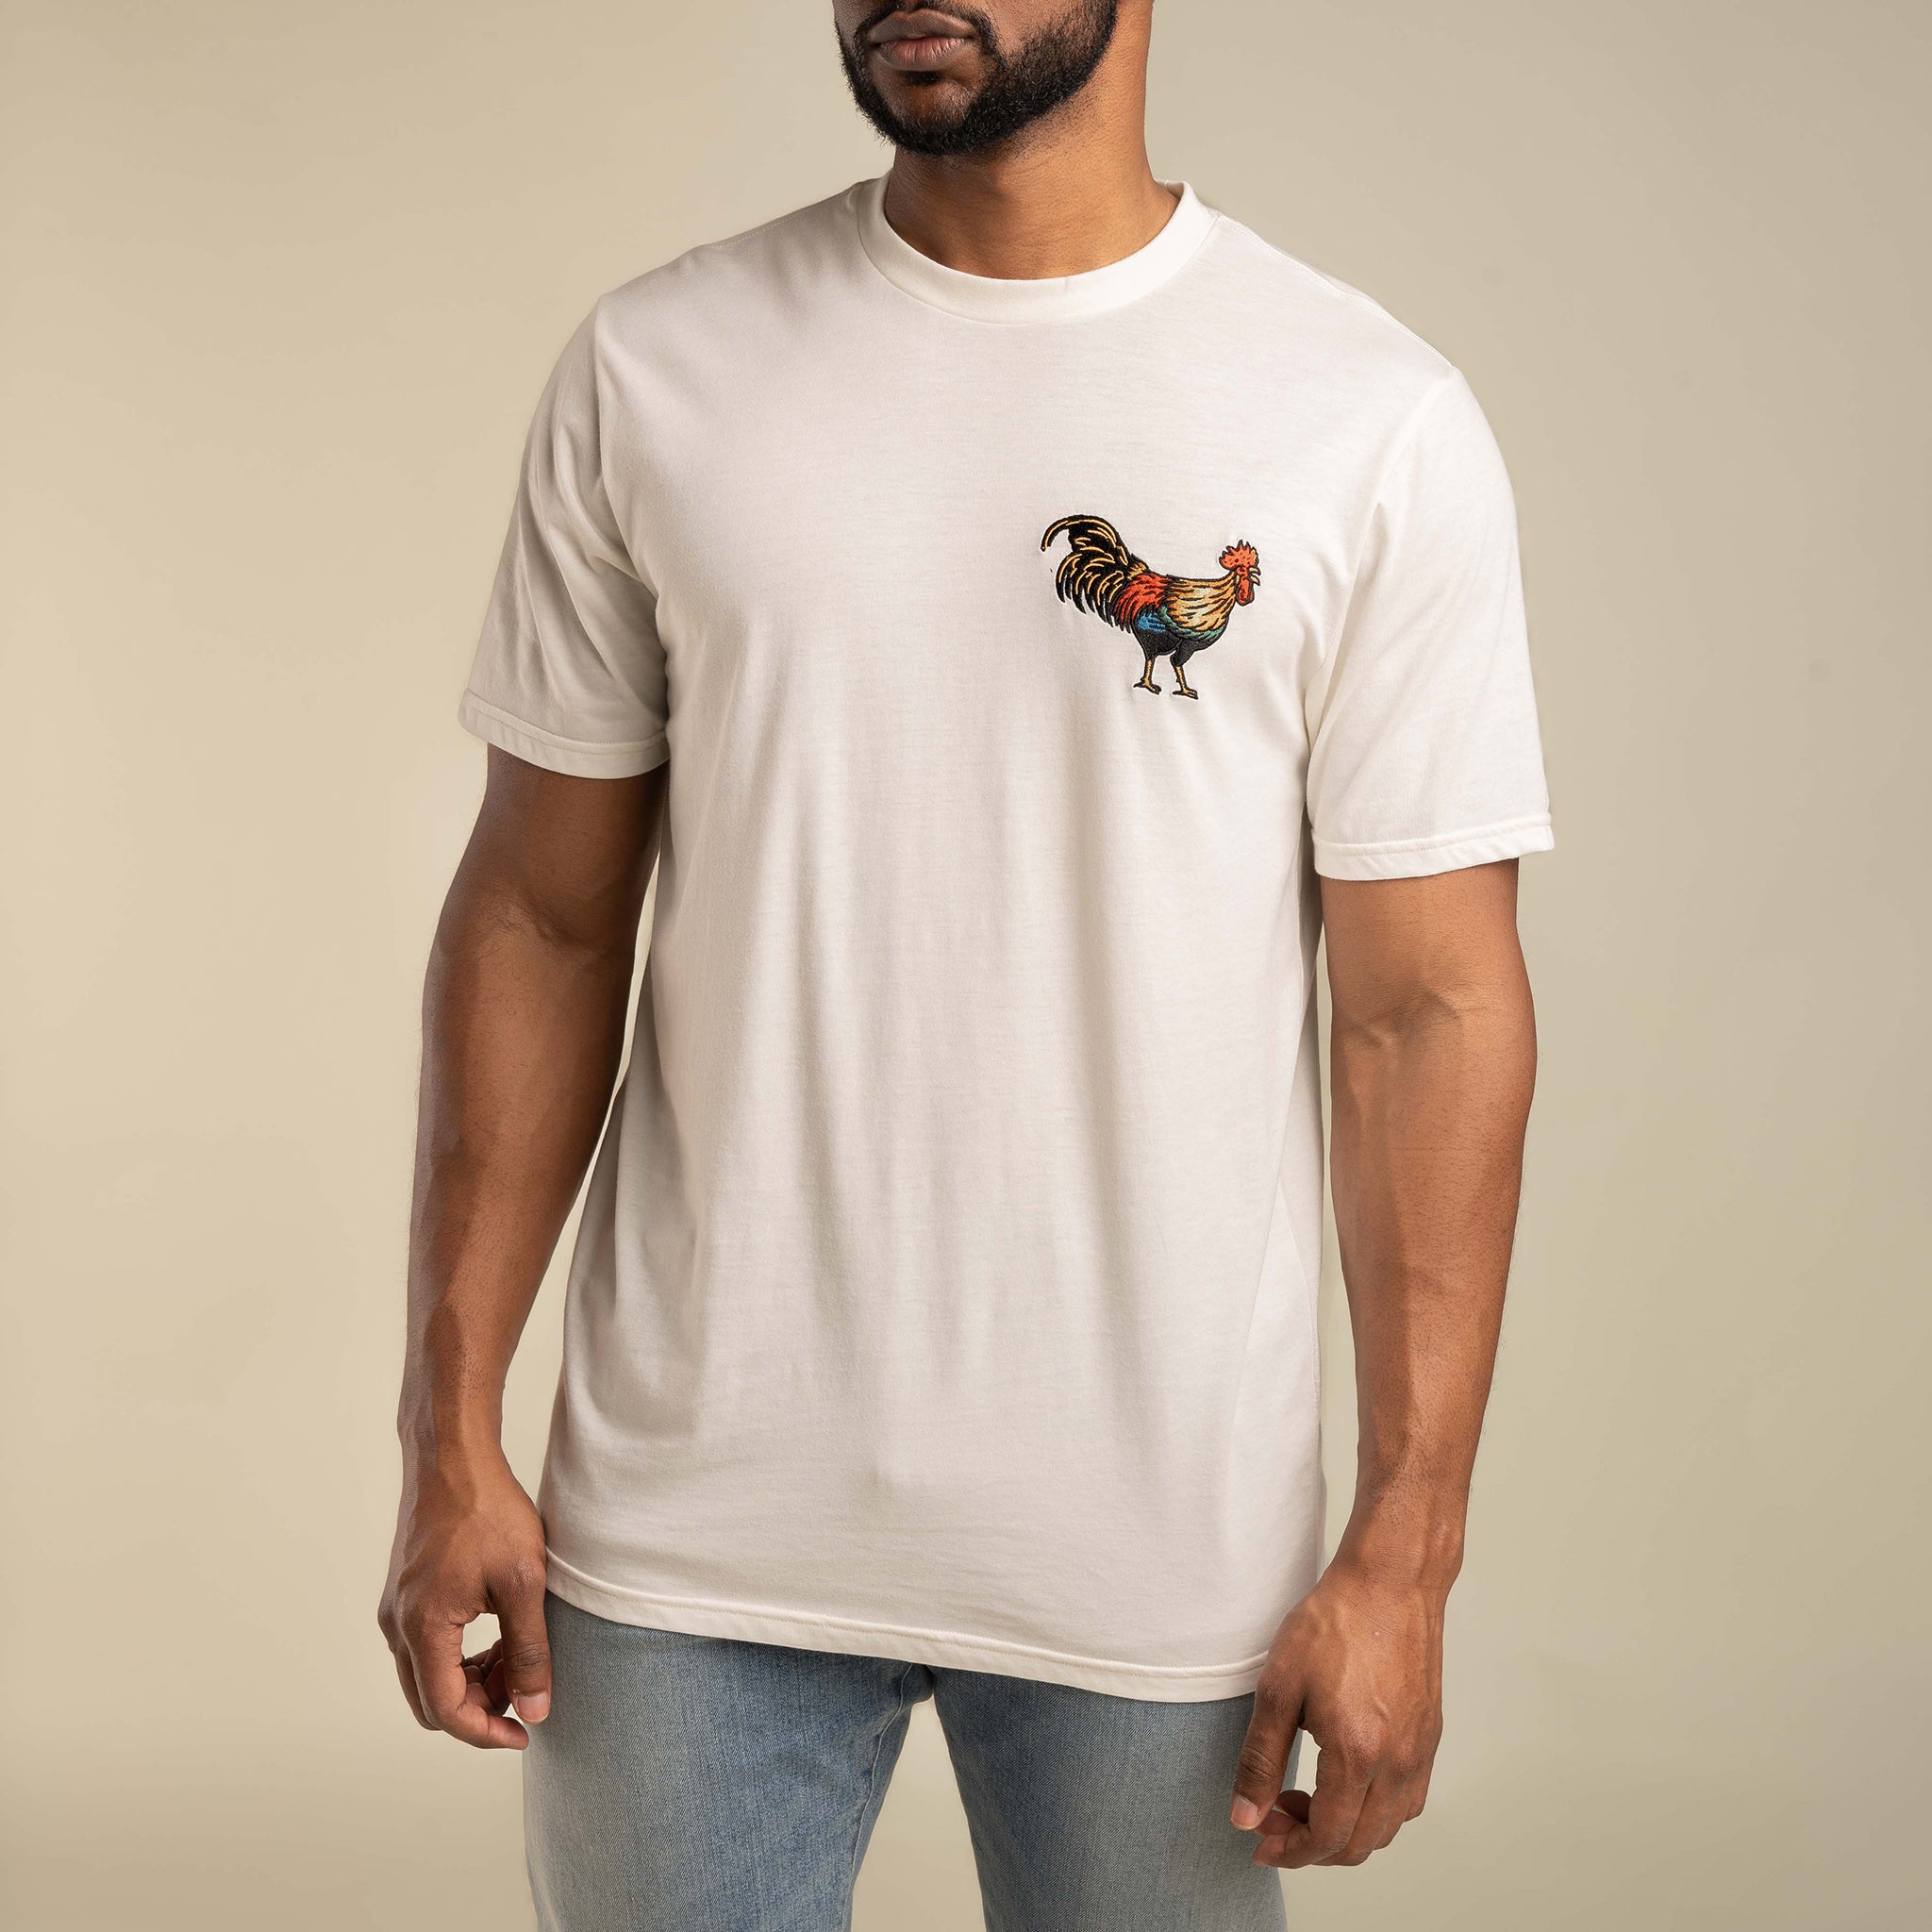 Yardbird T-Shirt